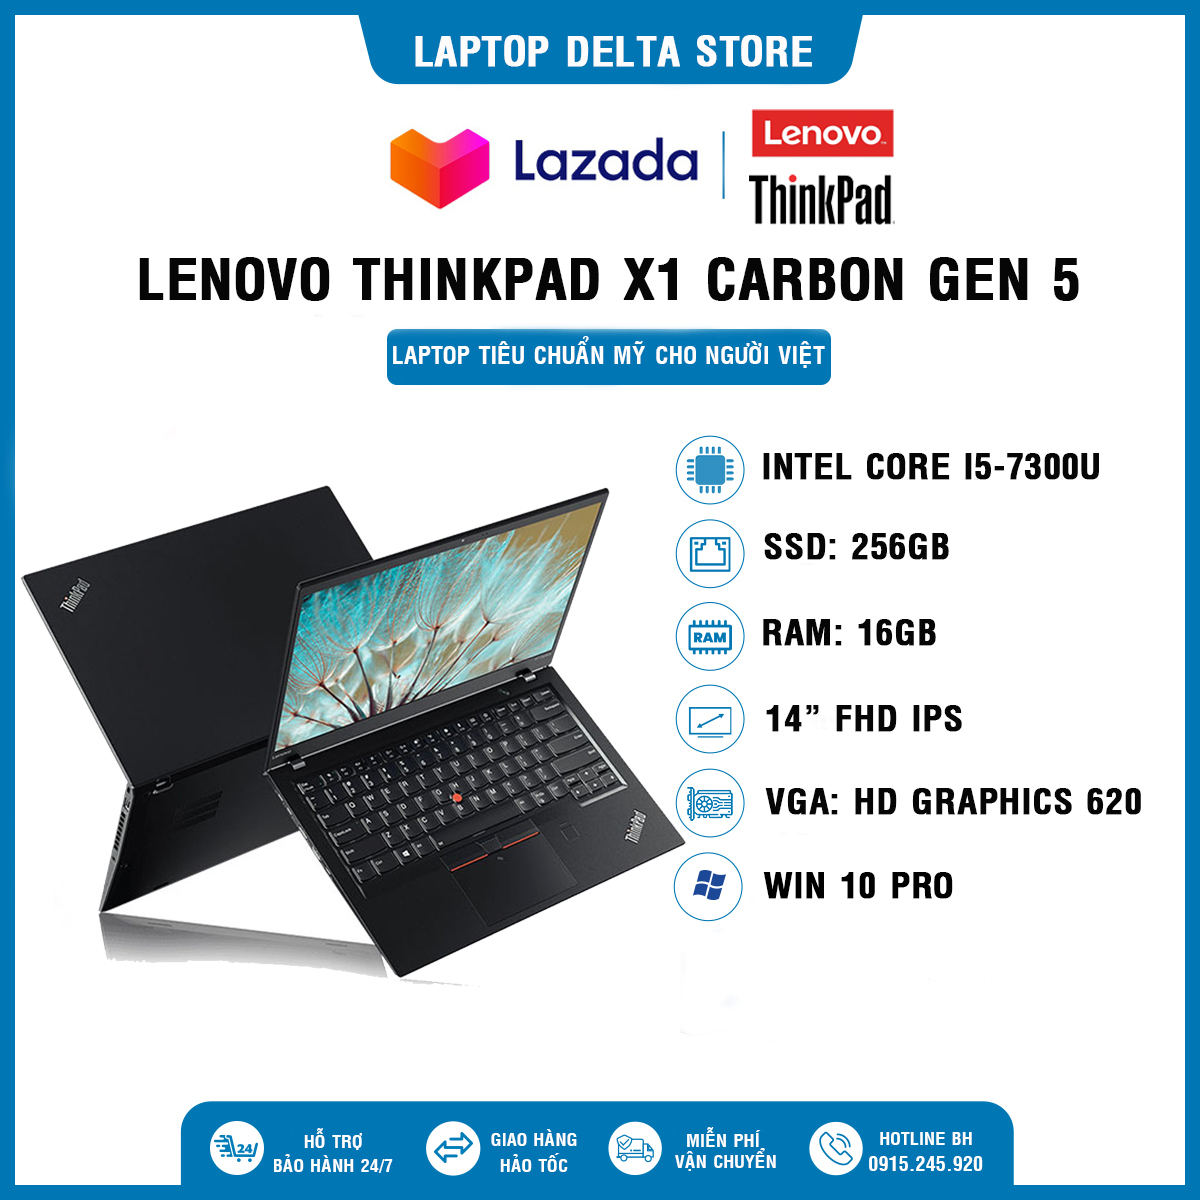 Lenovo Thinkpad X1 Carbon Gen 5 [CAM KẾT 100% HÀNG NHẬP USA